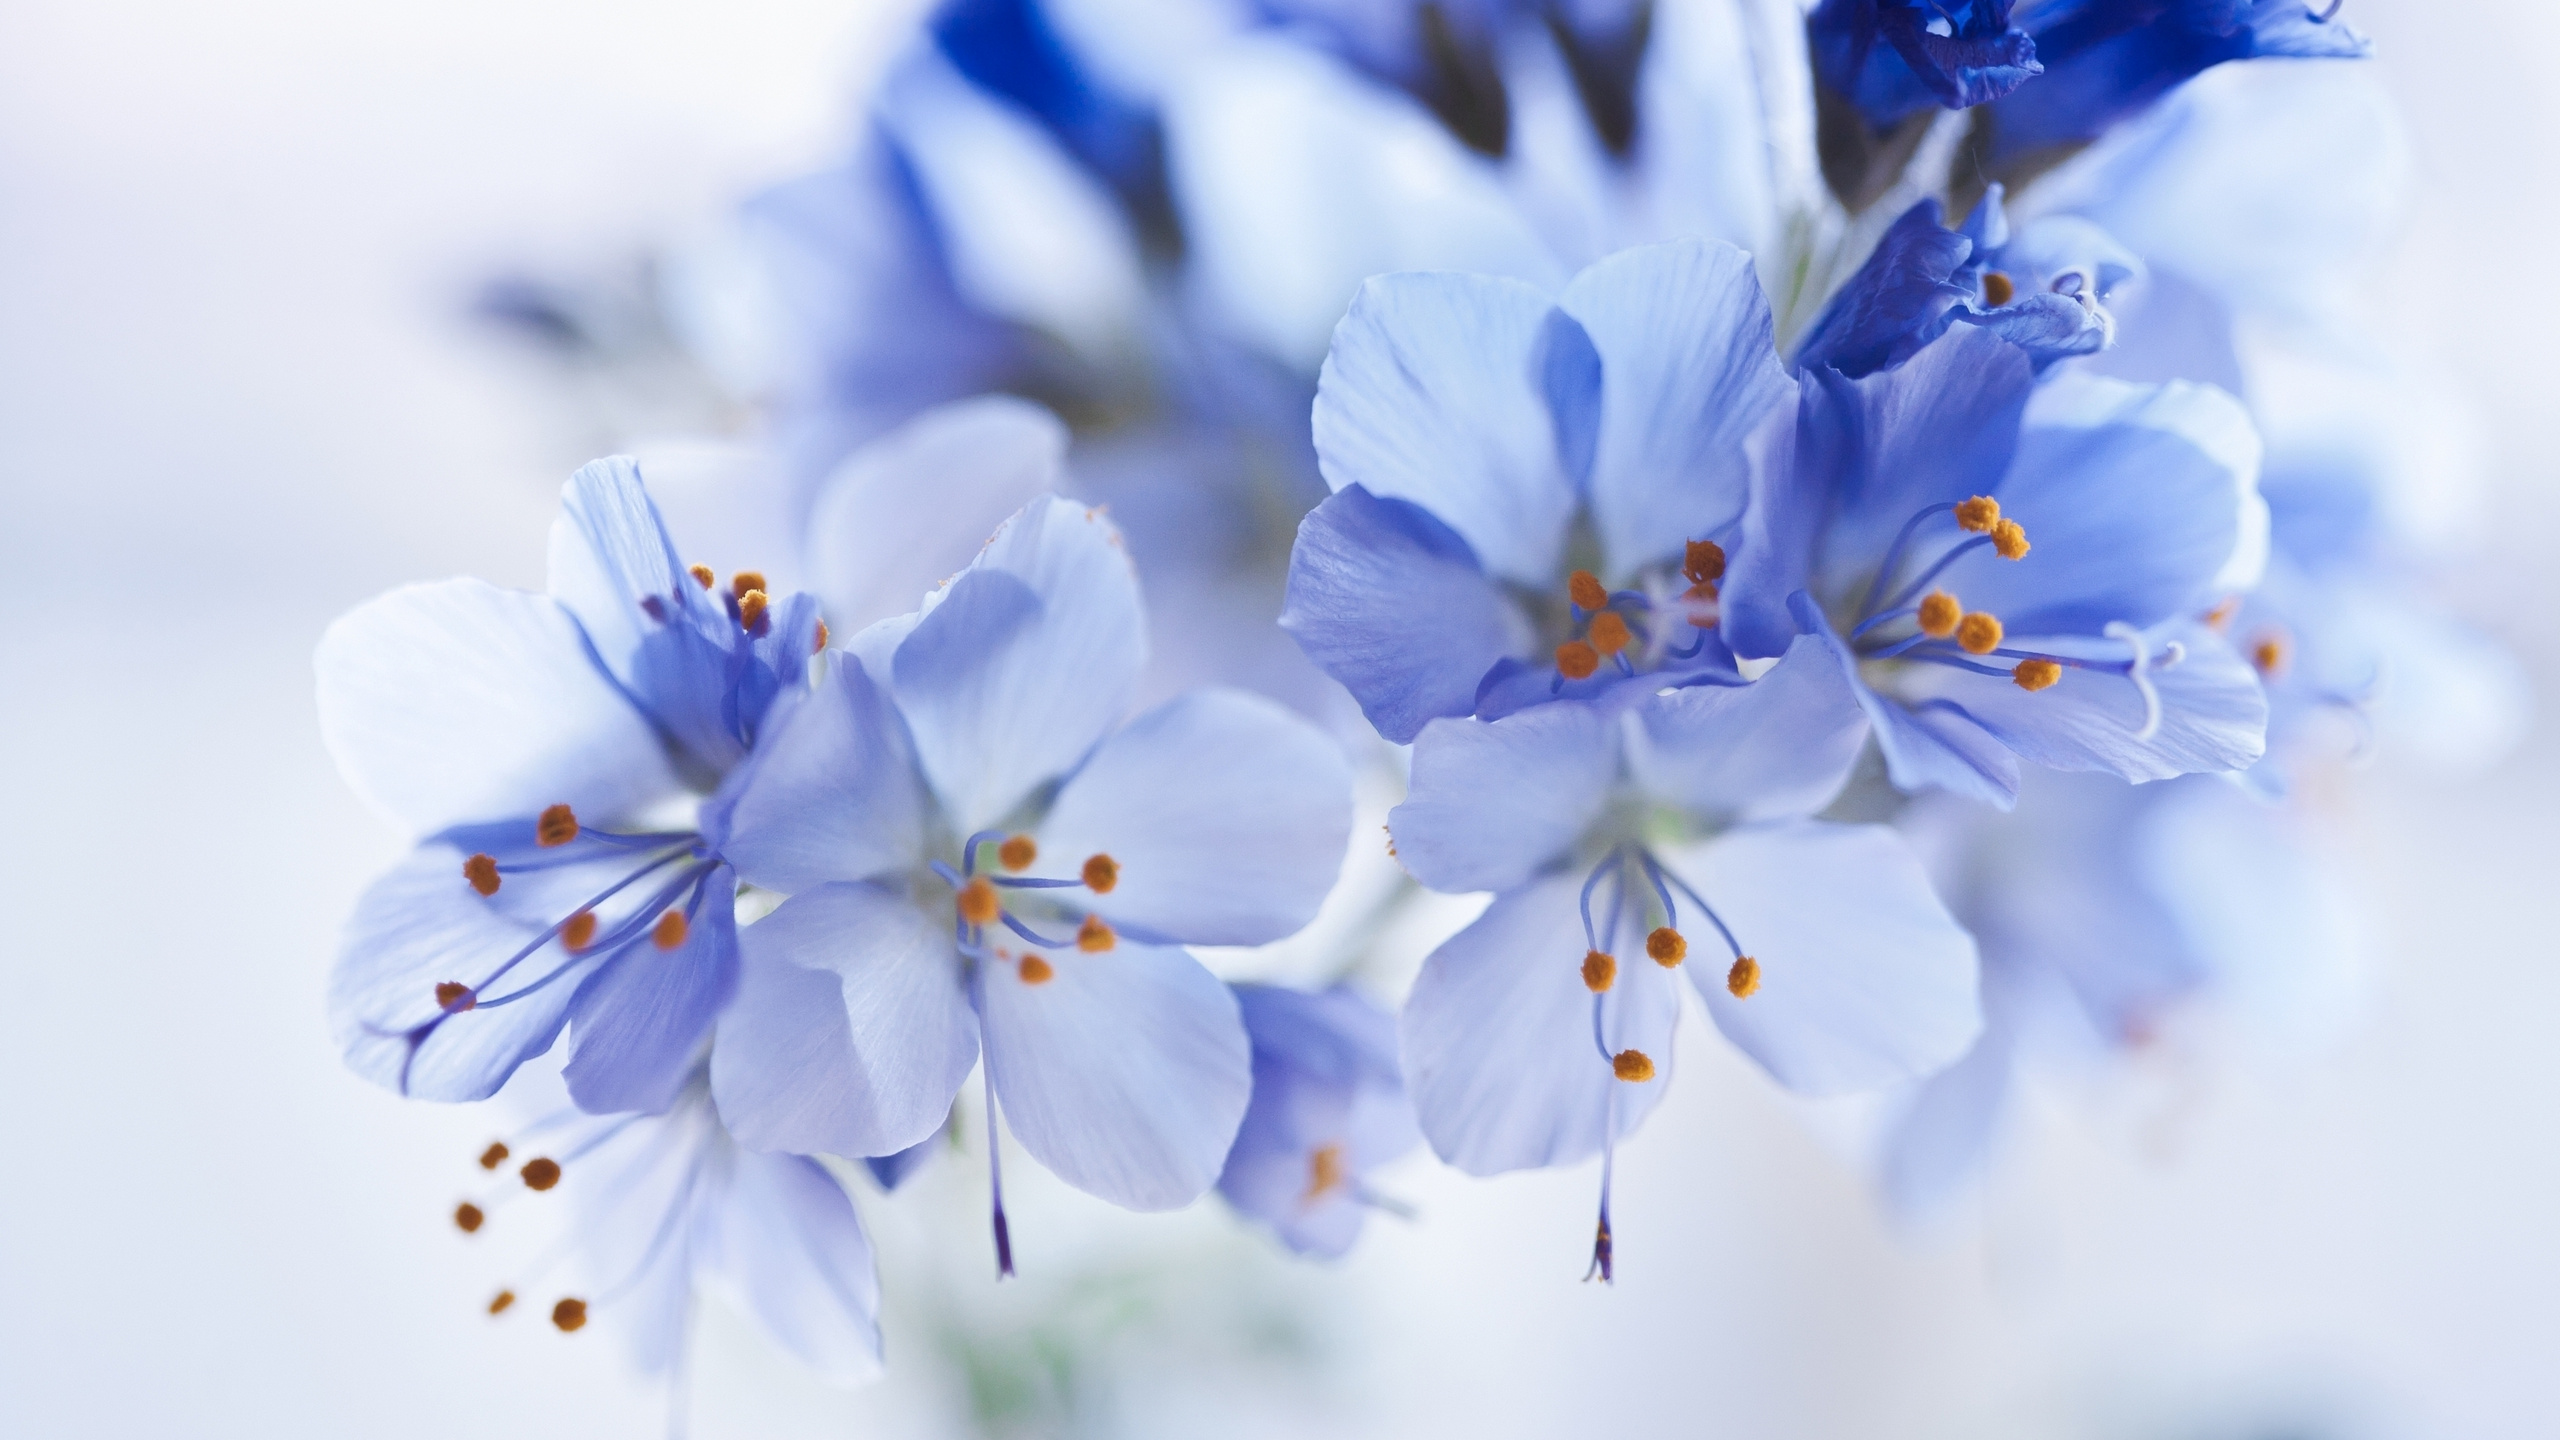 Flores Blancas y Azules en Lentes de Cambio de Inclinación. Wallpaper in 2560x1440 Resolution